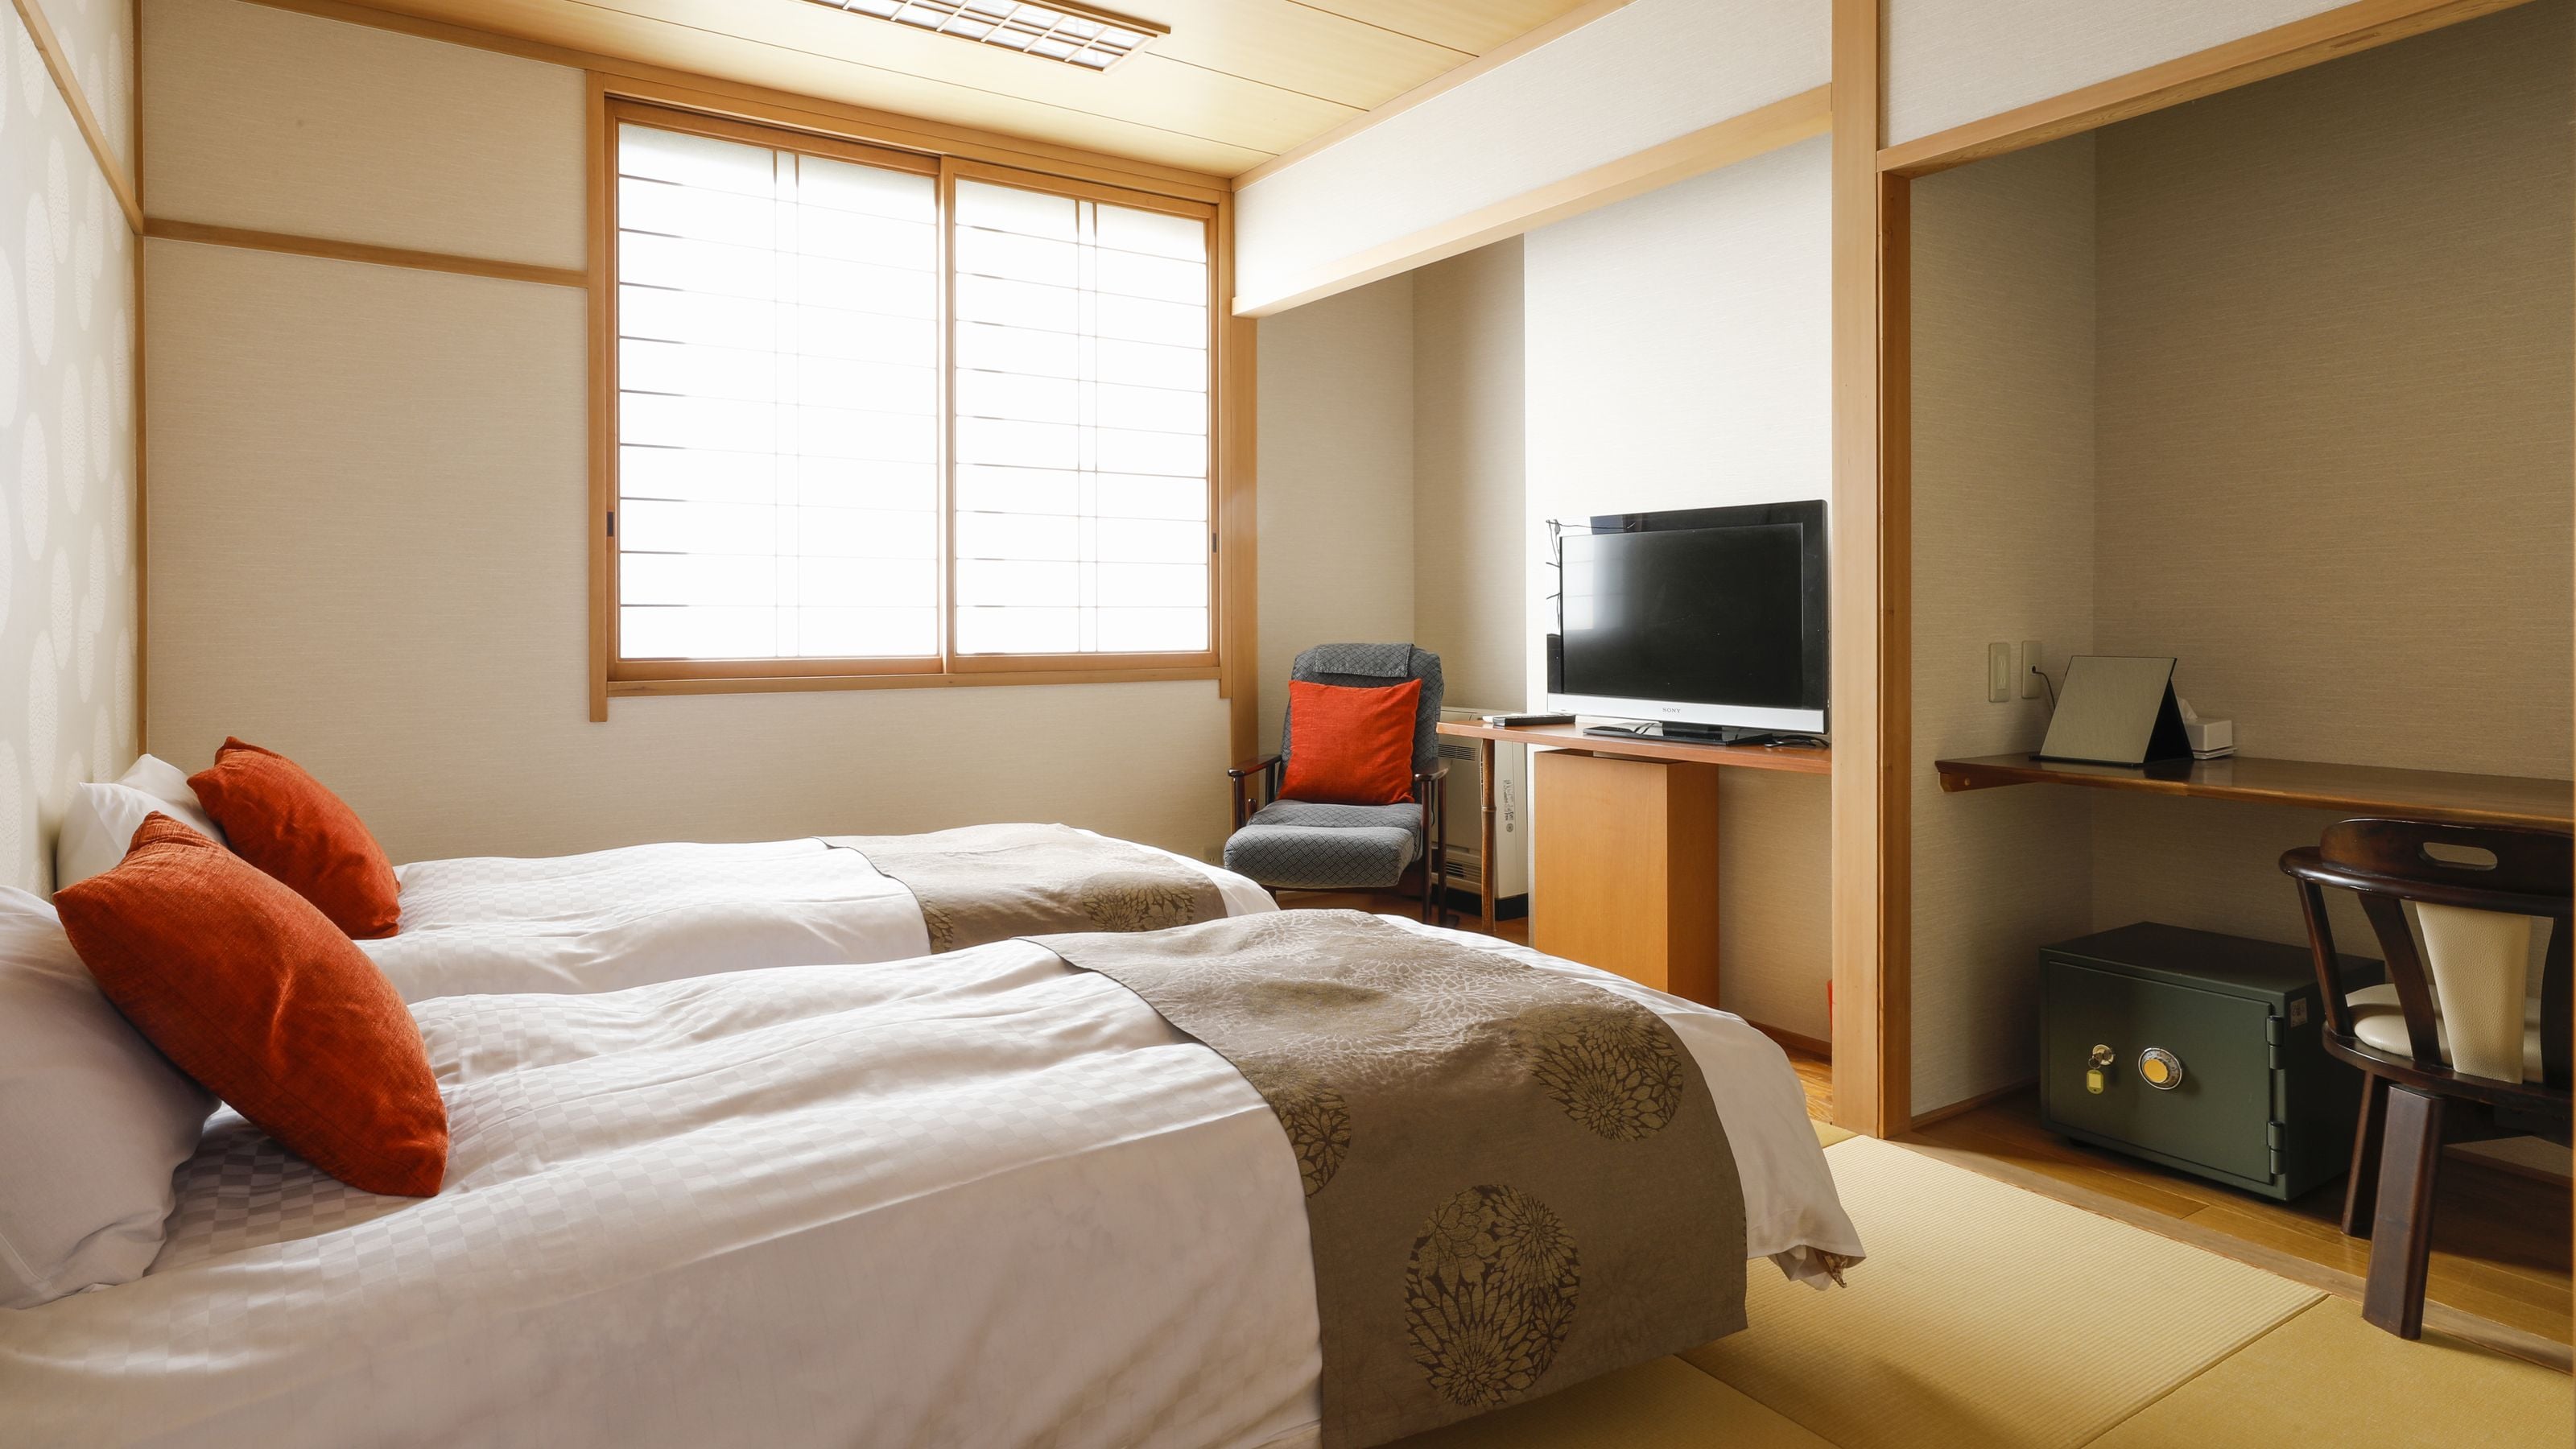 * ตัวอย่างเตียงแฝดญี่ปุ่น: มีเตียงคู่ซิมมอนส์ให้บริการ สำหรับการเดินทางคนเดียวหรือเพื่อธุรกิจ